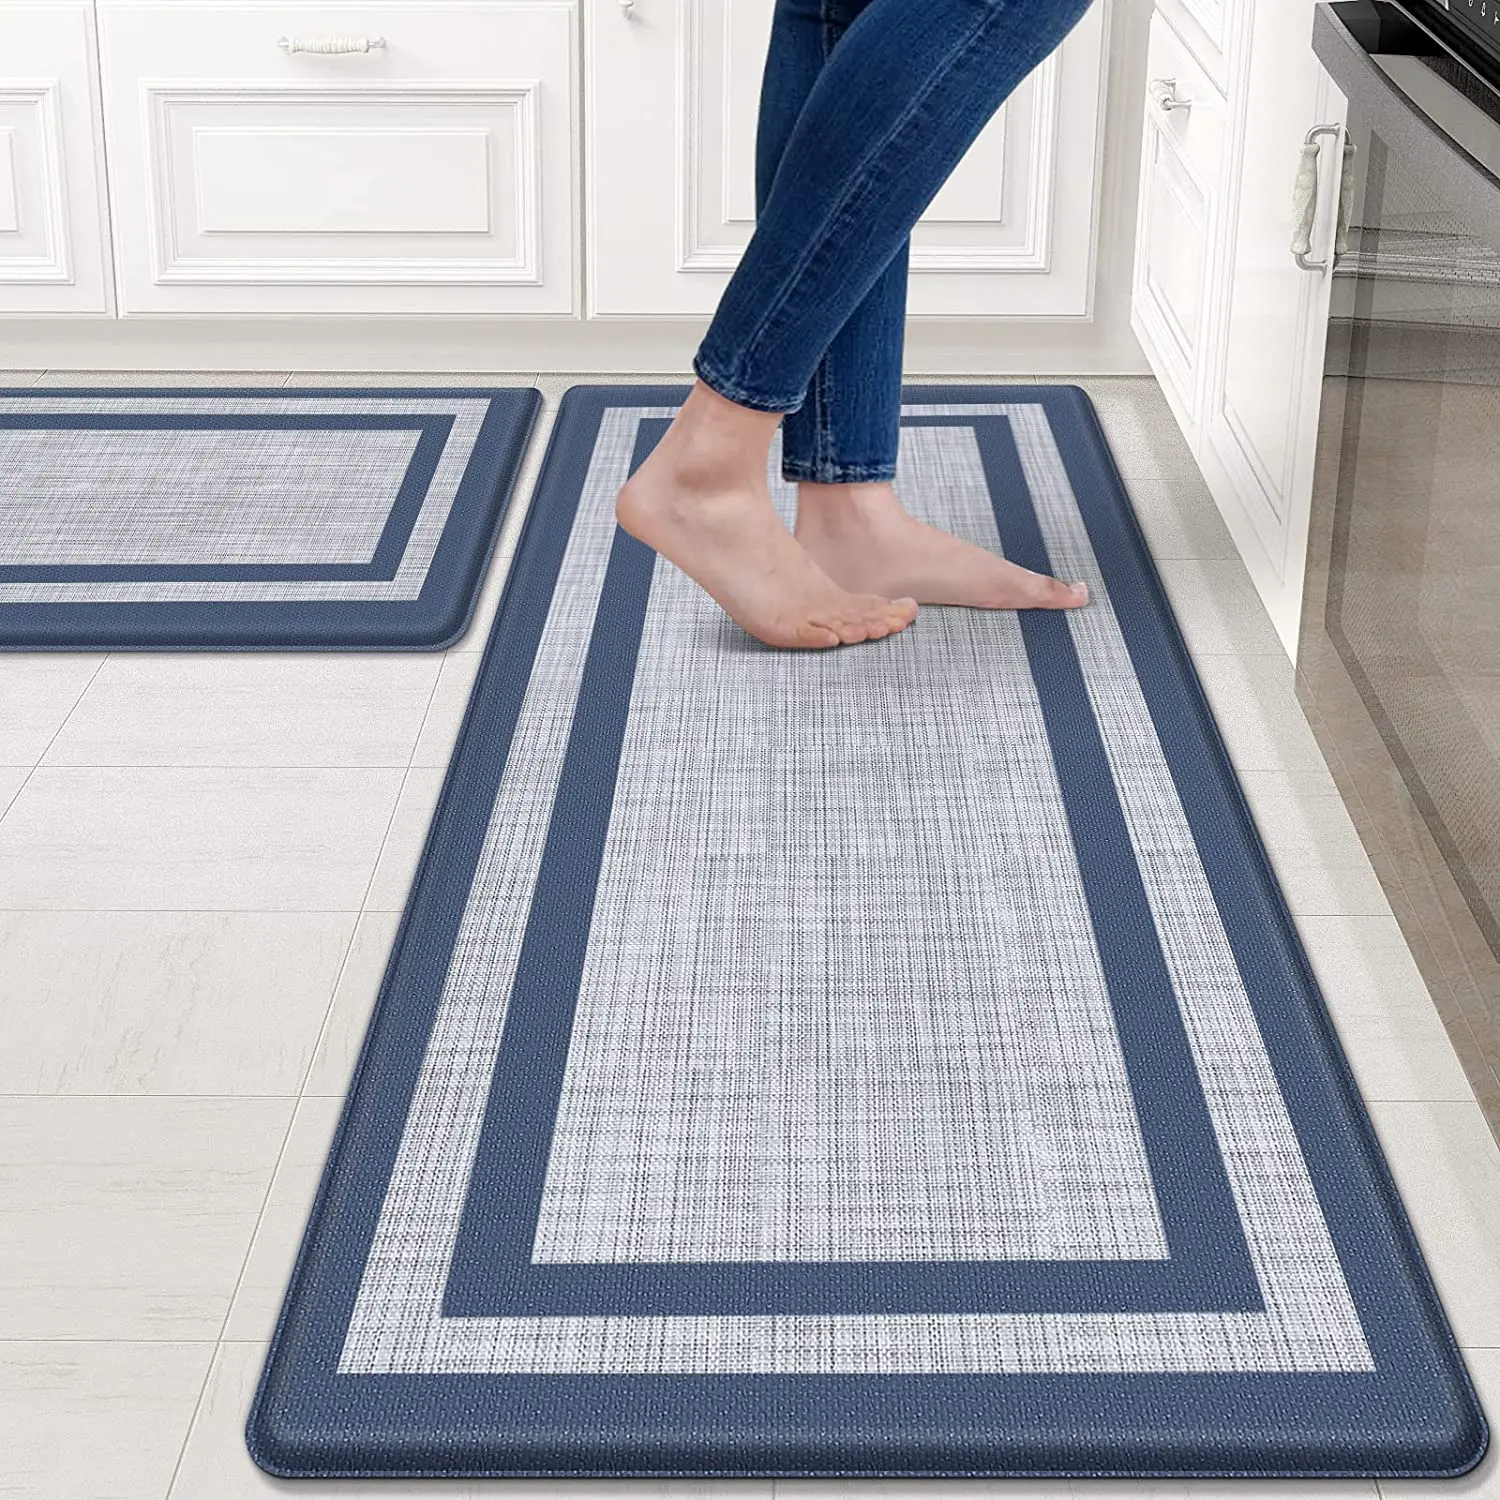 De cocina de PVC de pie mat anti-fatiga cocina alfombrilla antideslizante alfombra de piso